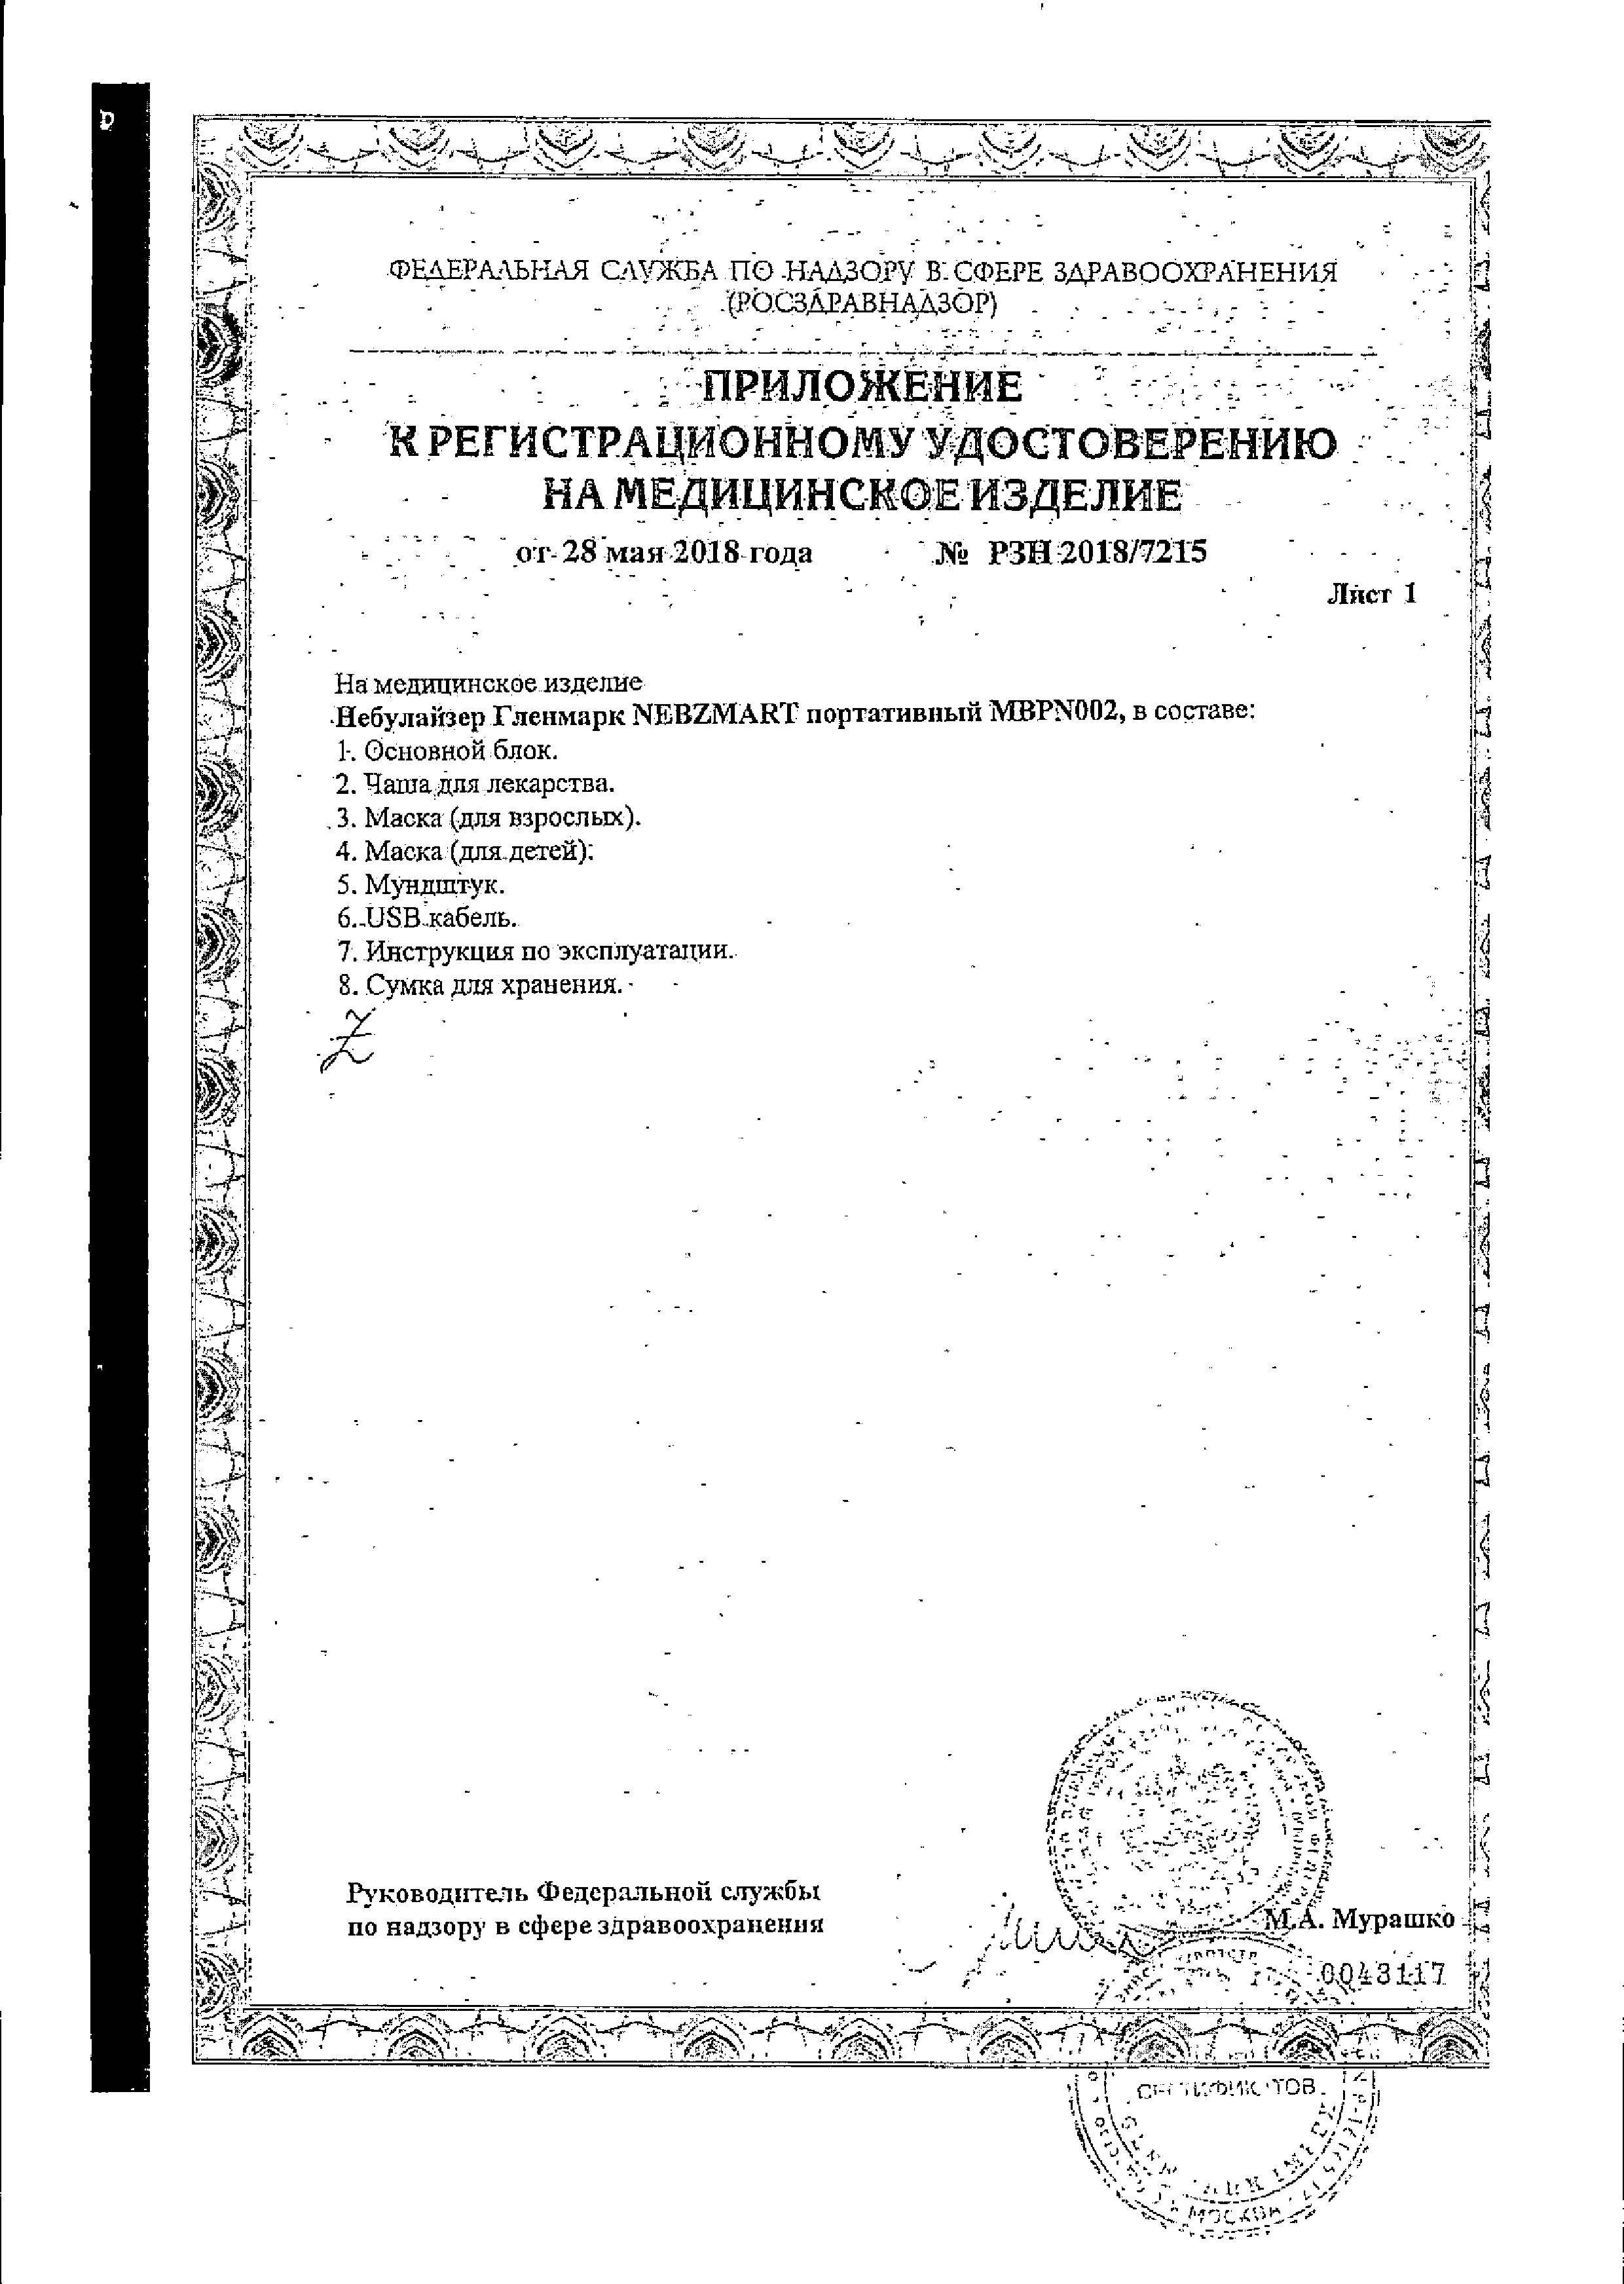 Ингалятор Гленмарк Nebzmart портативный MBPN002 сертификат